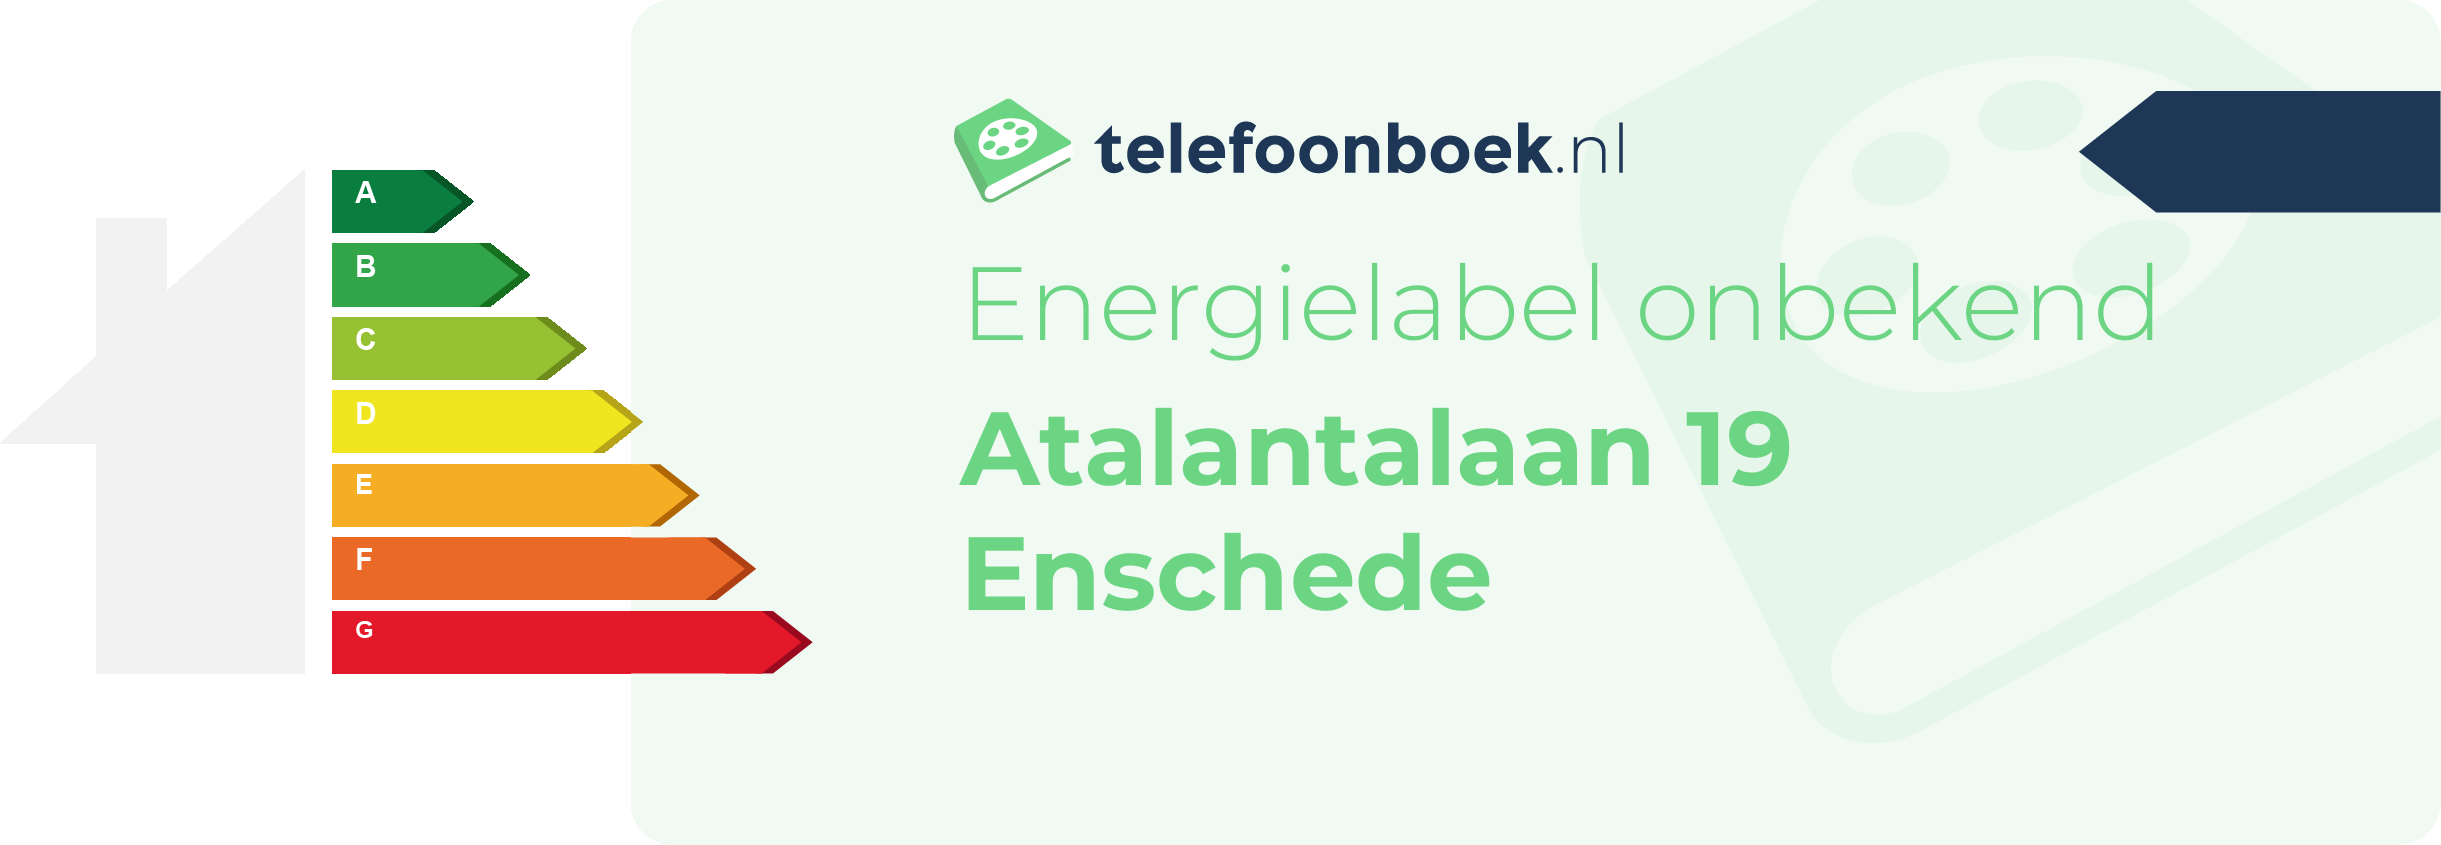 Energielabel Atalantalaan 19 Enschede